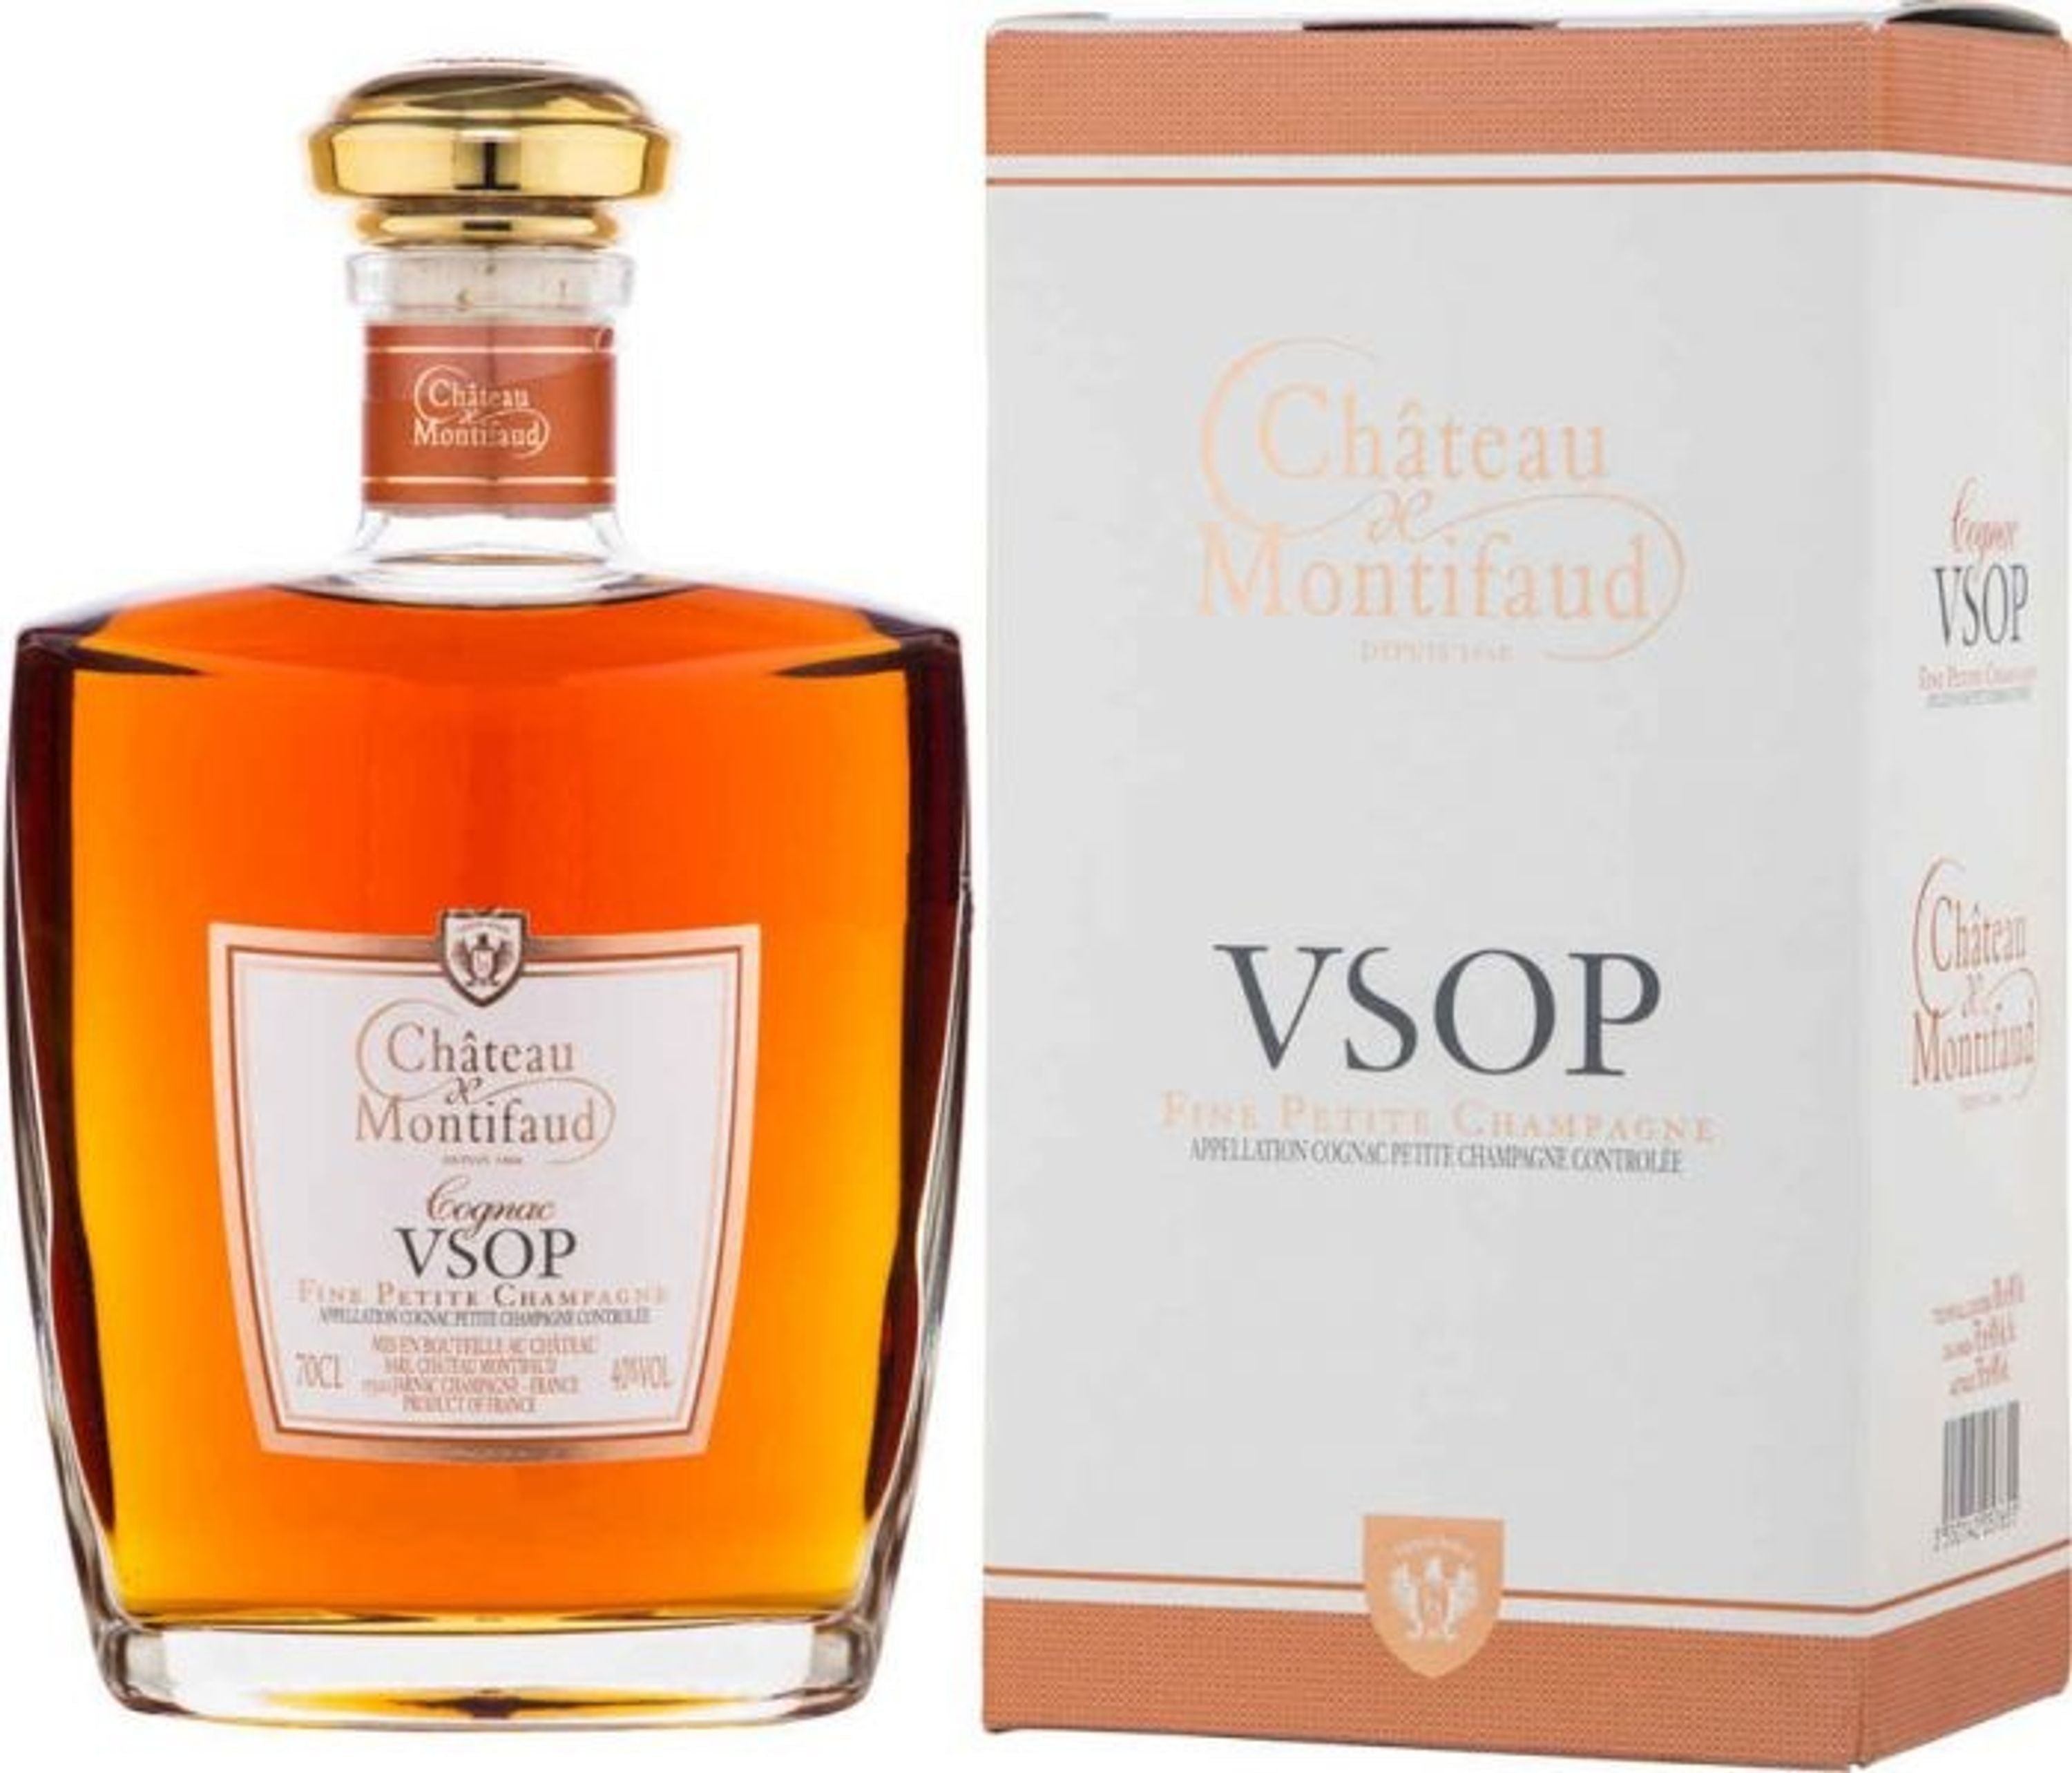 Chateau Montifaud VSOP Elliptique 0.7l, alc. 40% by volume, Cognac France 